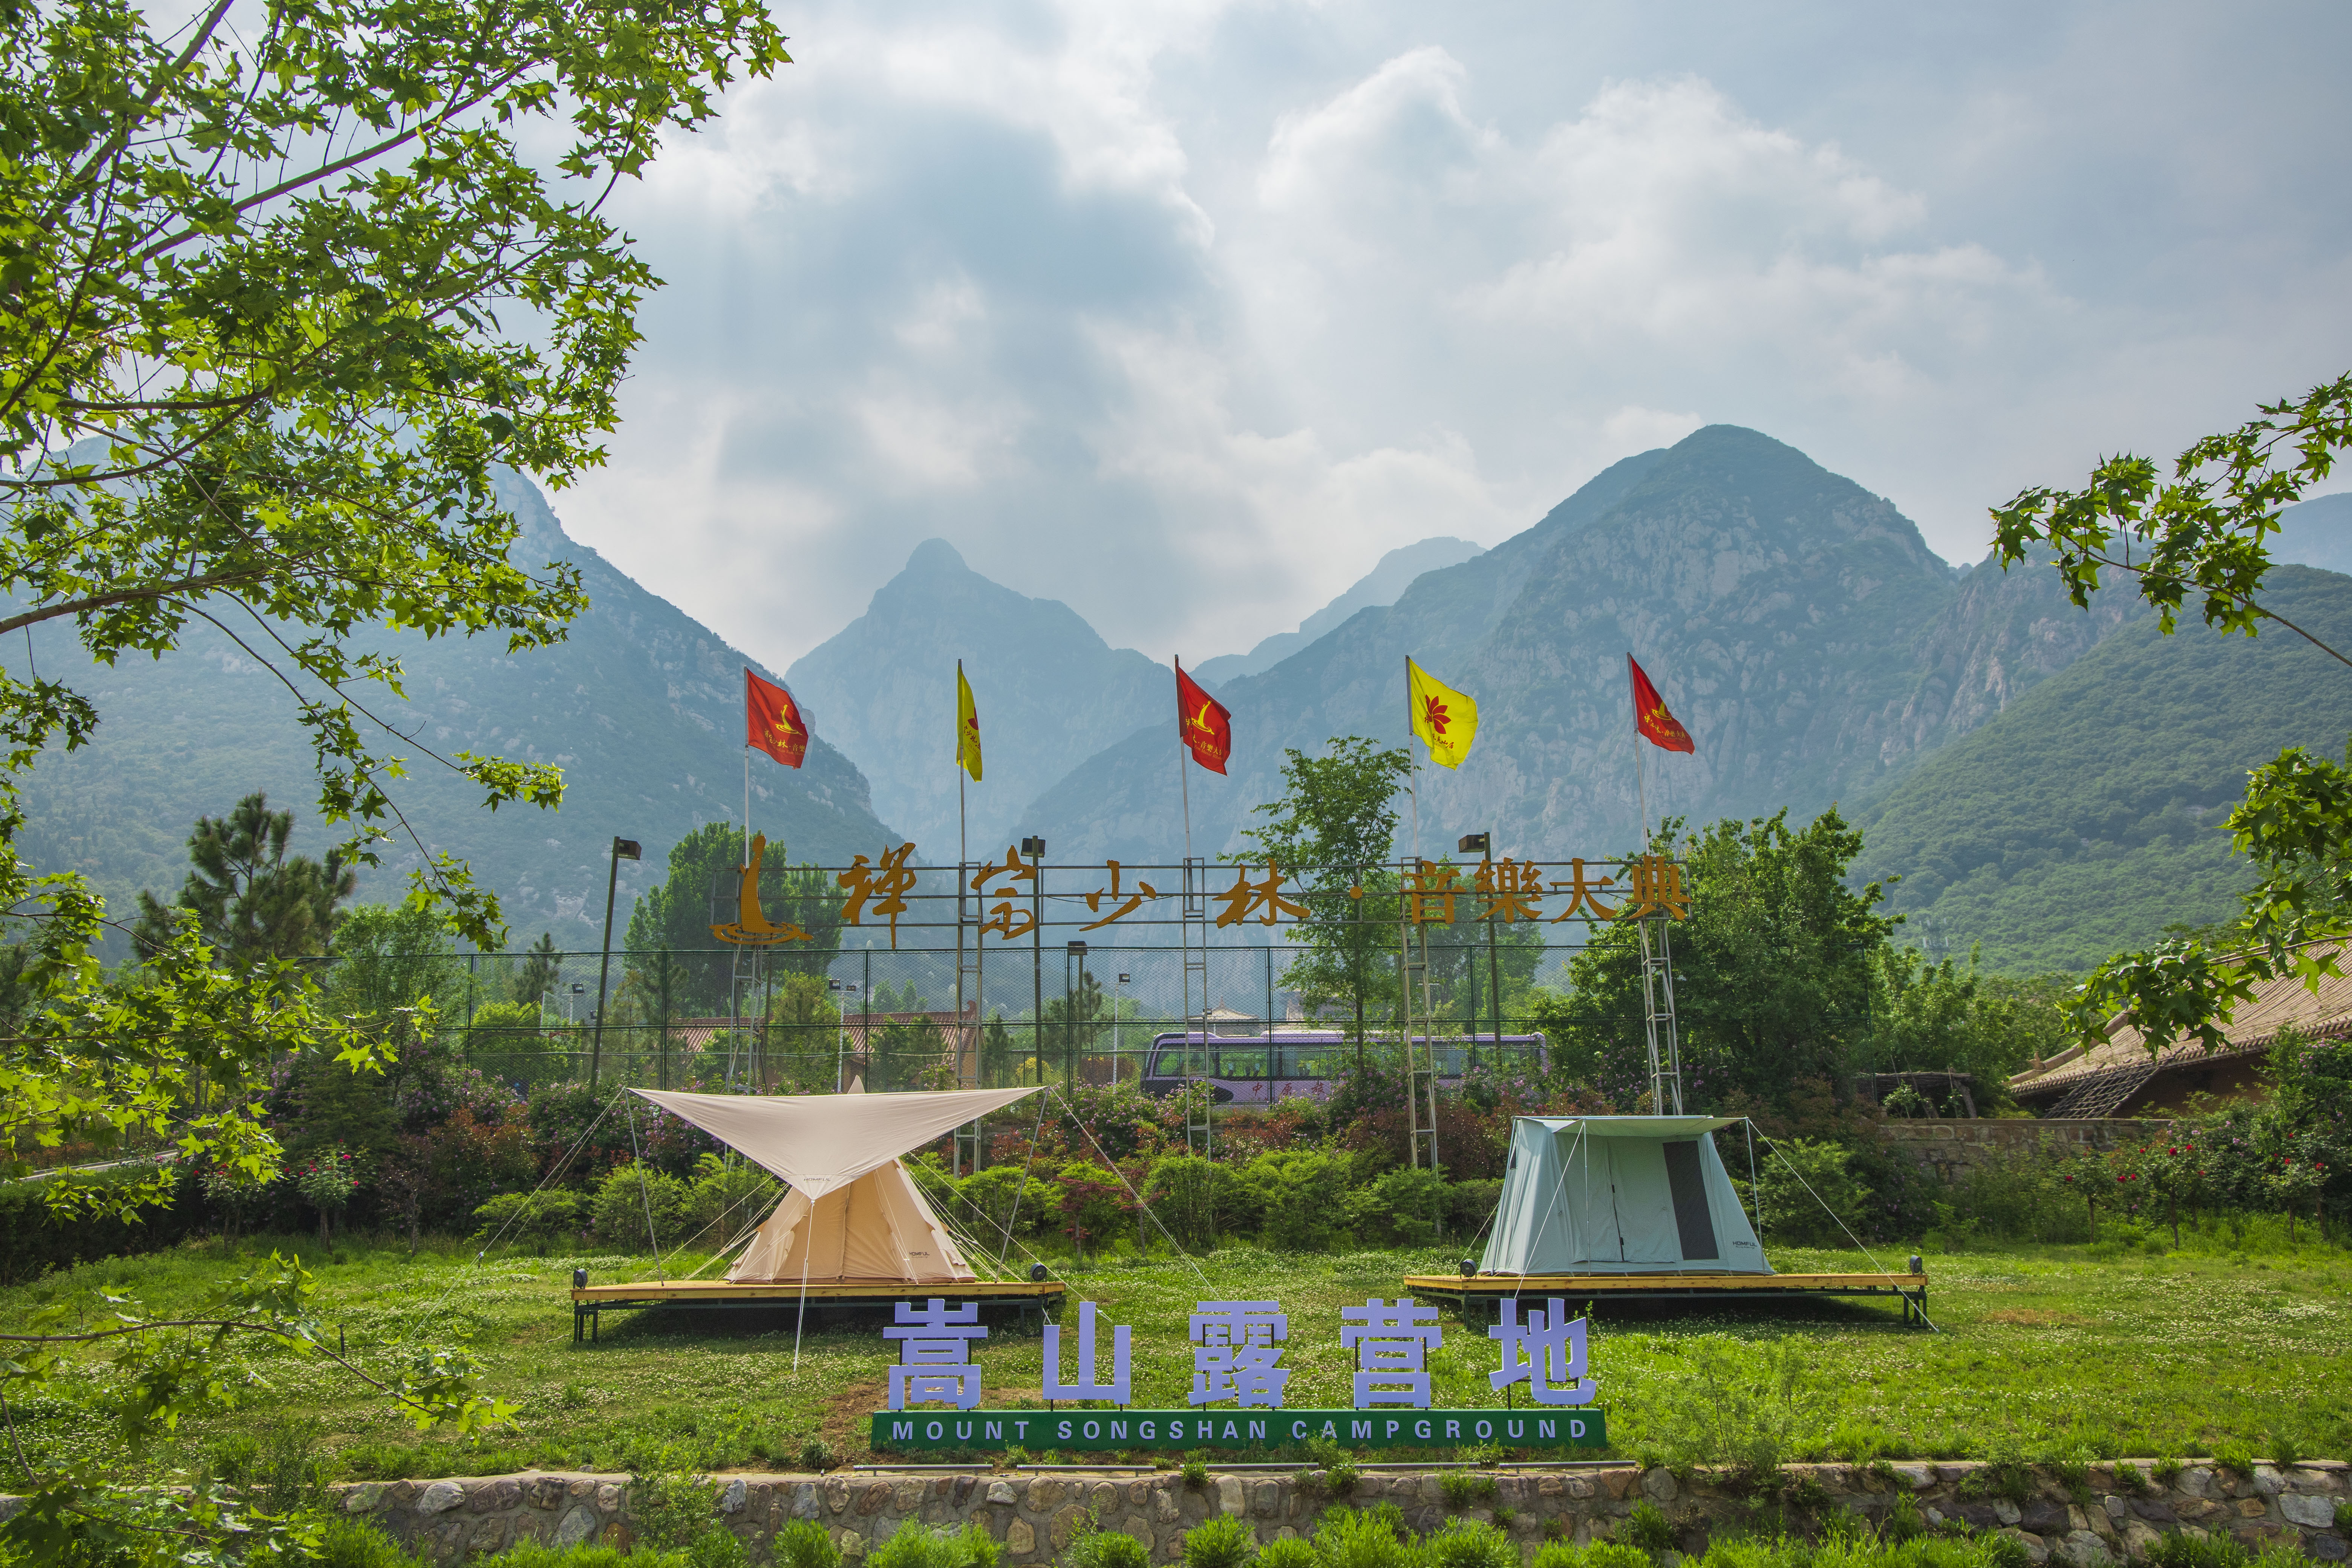 郑州市发布22个露营地推荐名单4条夏日乡村旅游推荐线路